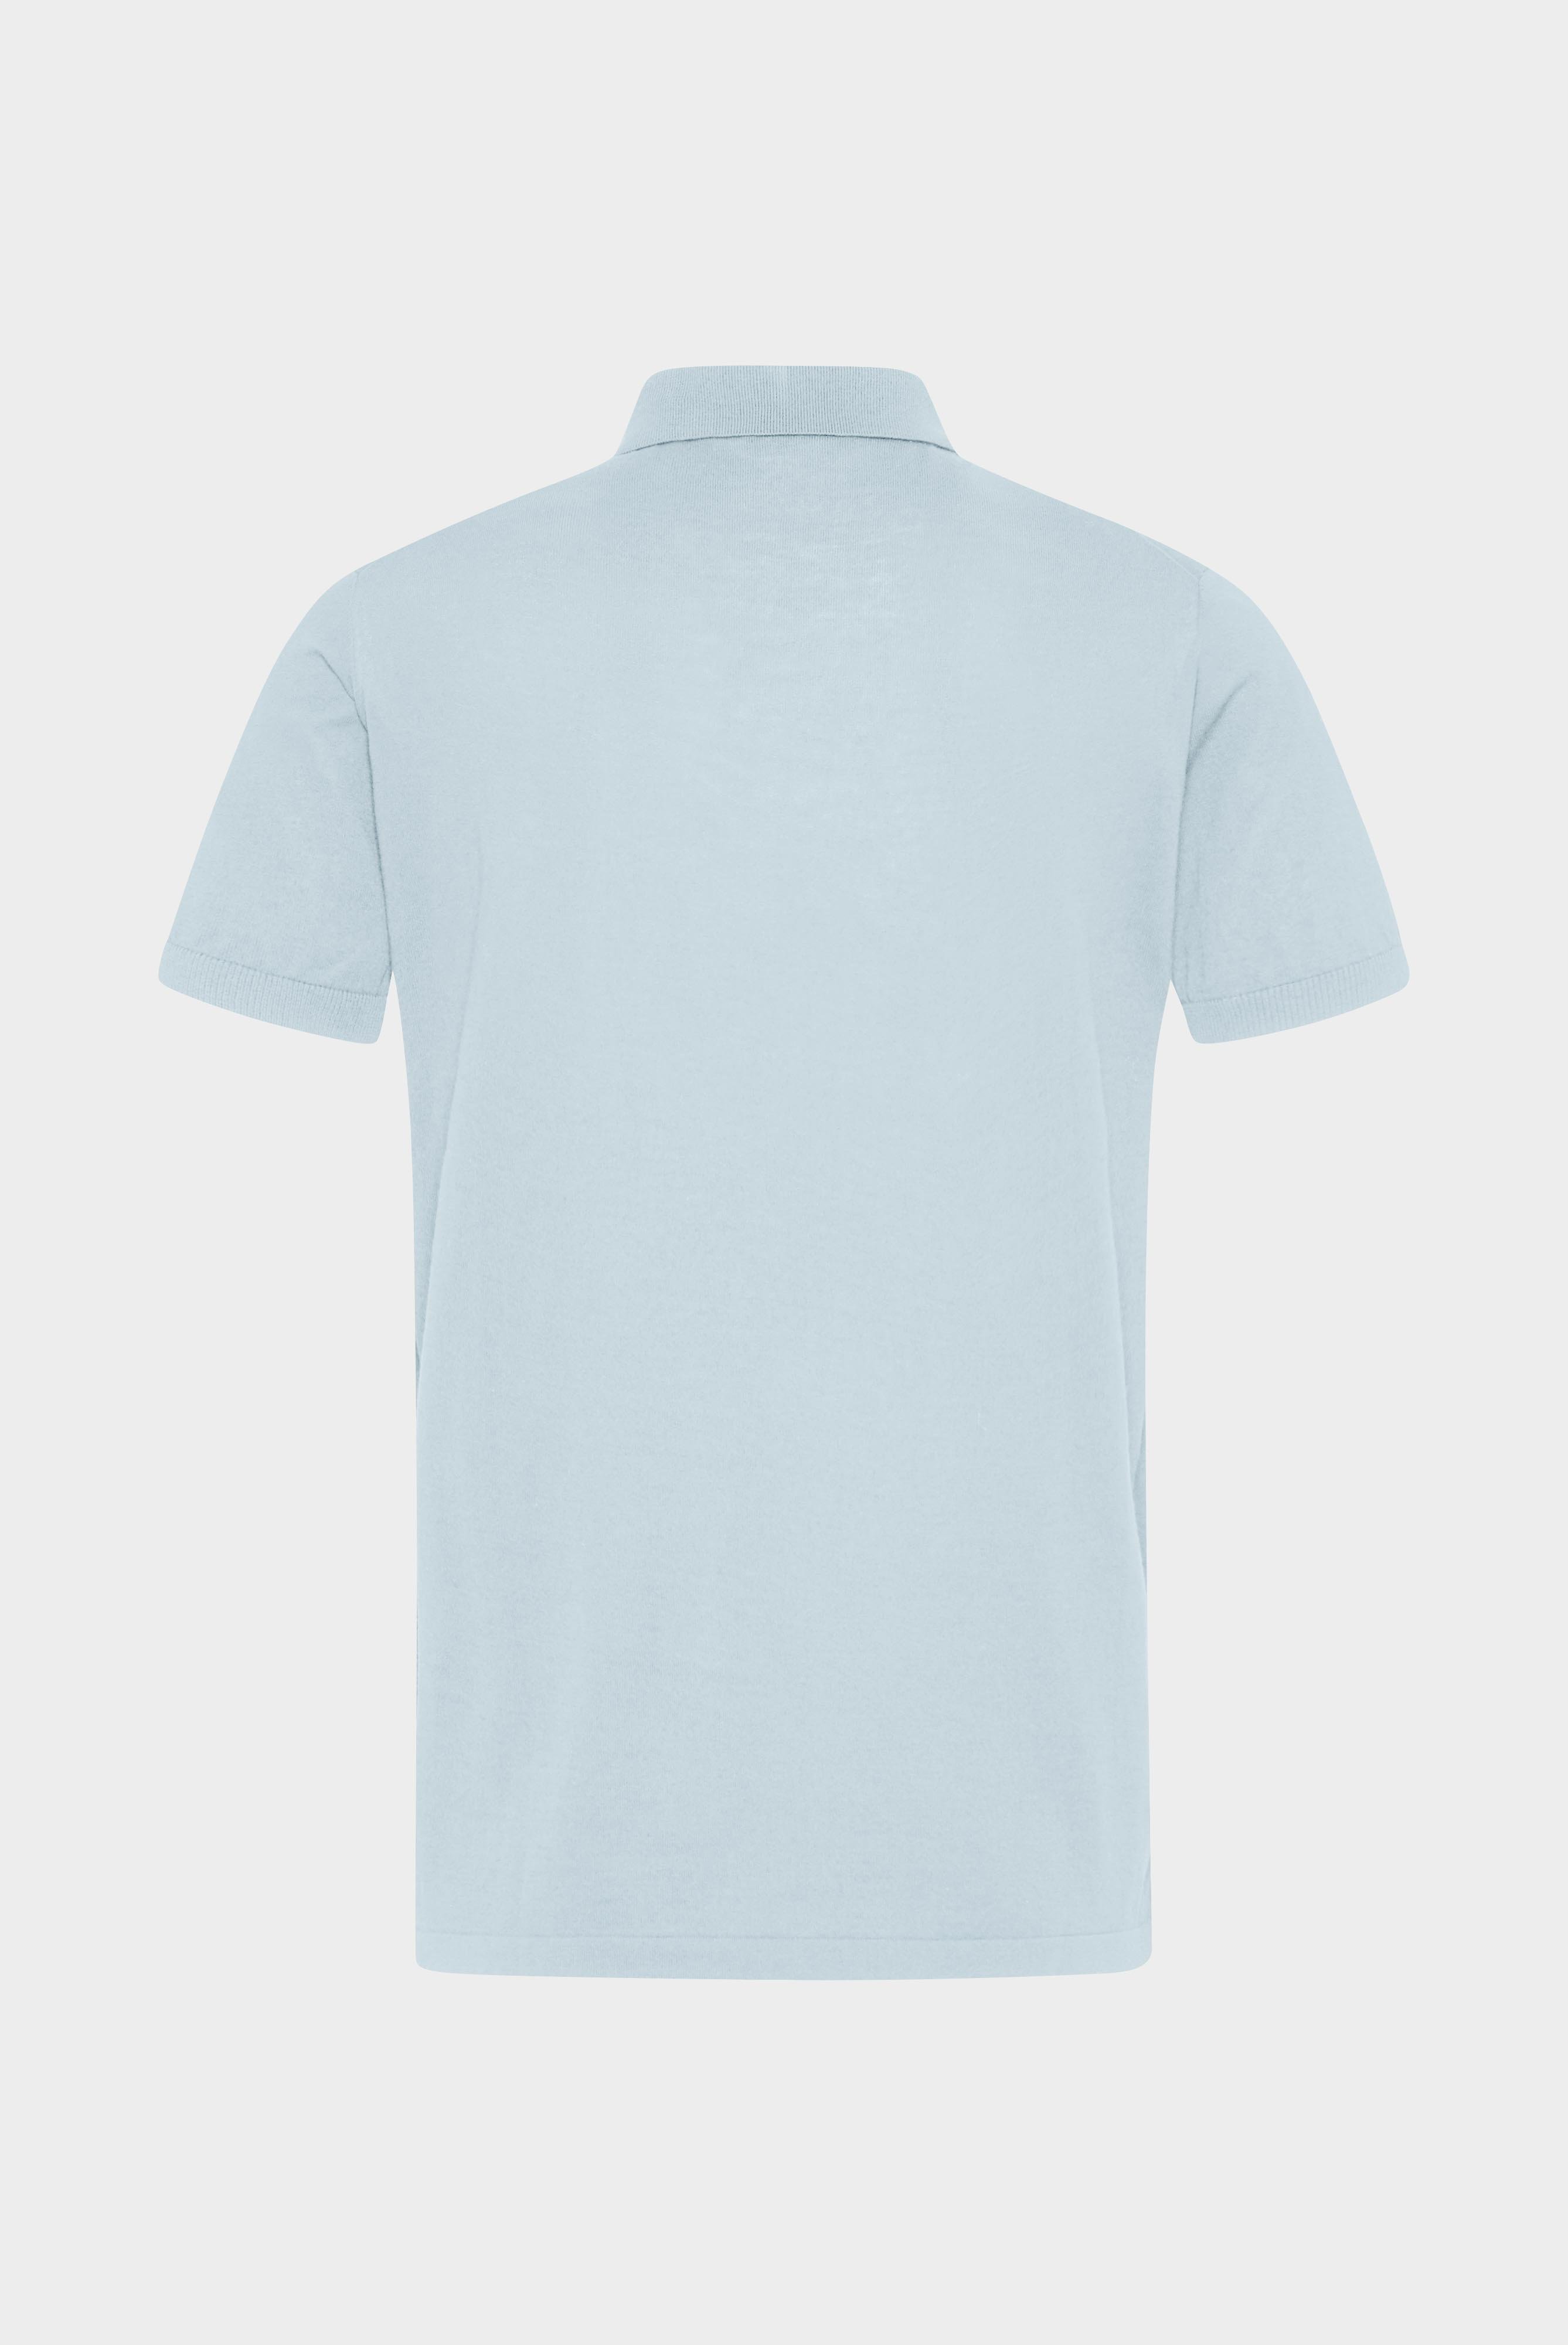 Poloshirts+Strick Polo-Shirt aus Air Cotton+82.8510..S00174.720.S